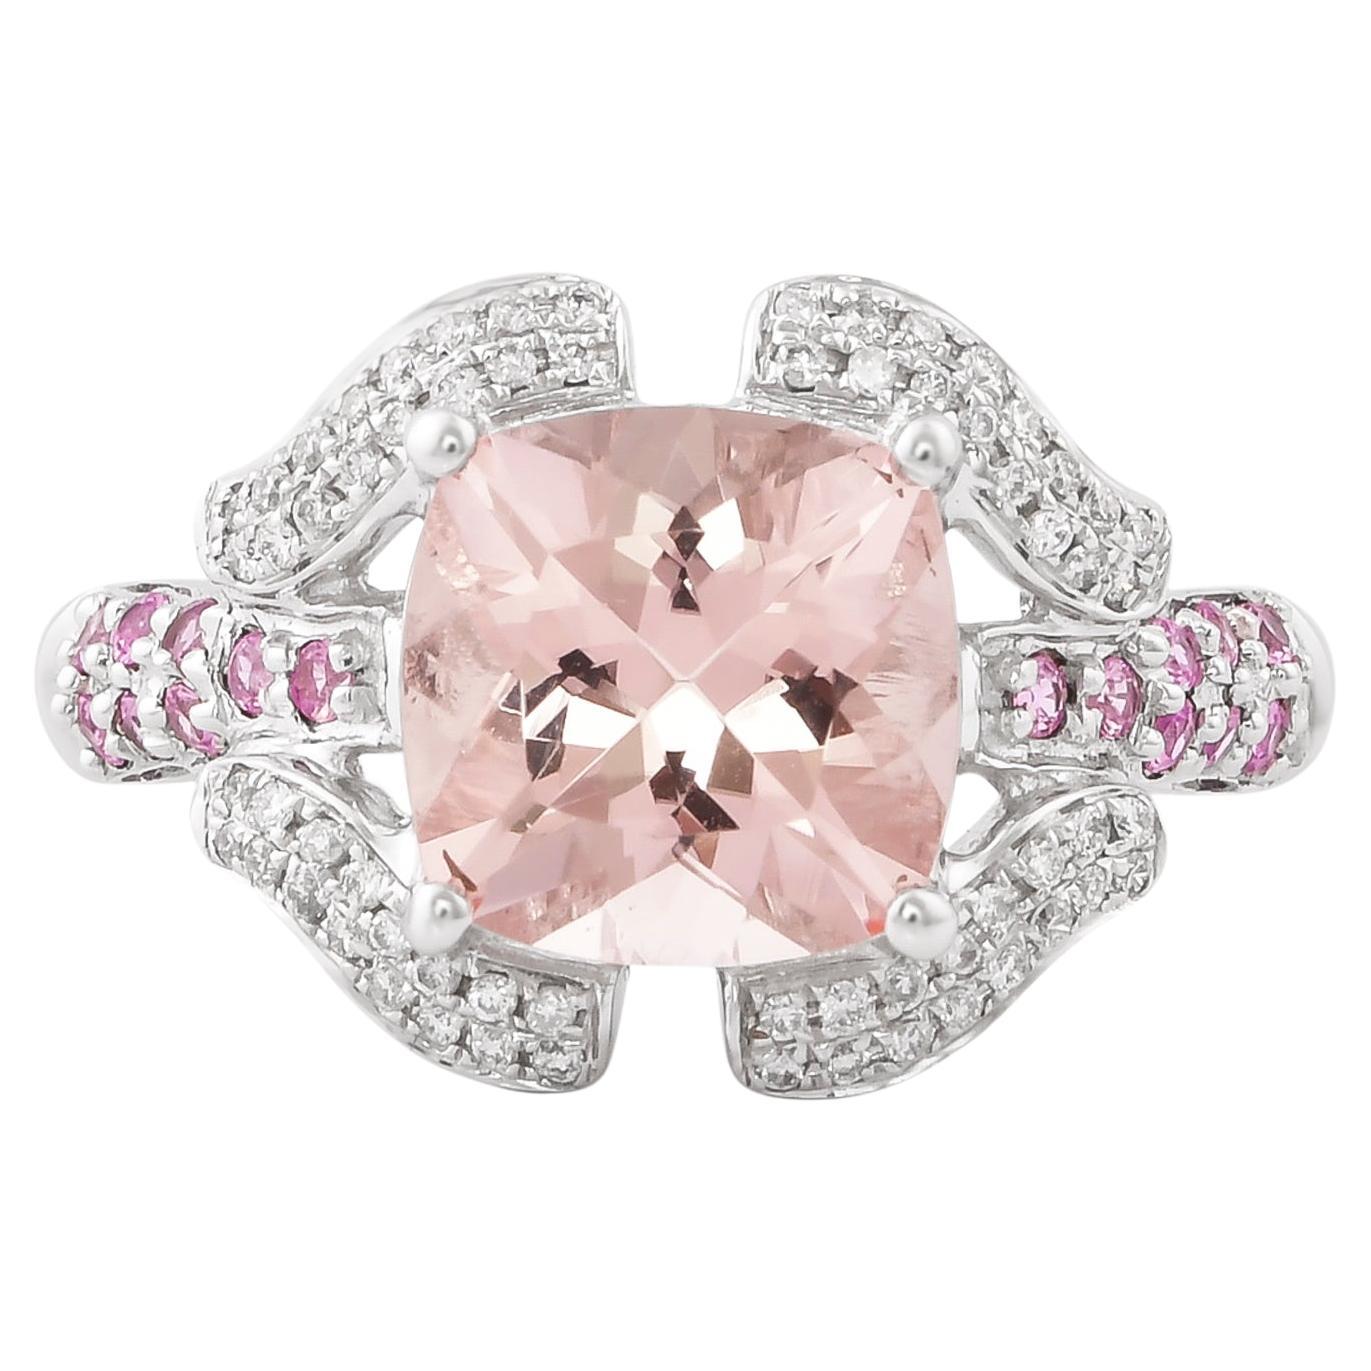 Ring aus 14 Karat Weißgold mit 3,08 Karat Morganit, rosa Turmalin und Diamanten.